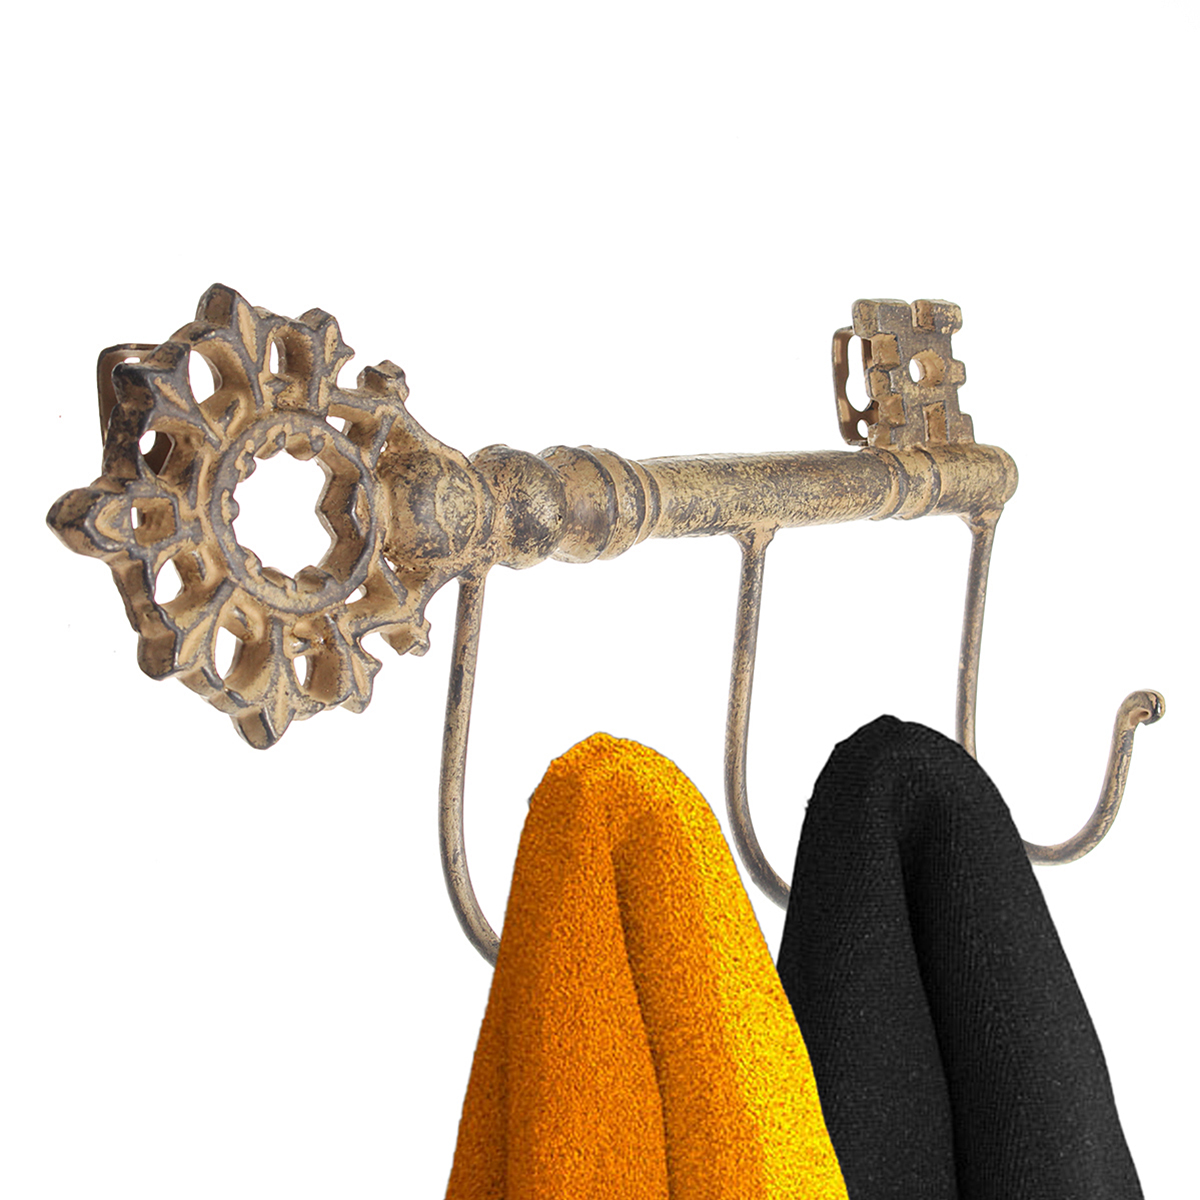 Wall-Mounted-Hooks-Rack-Pegs-Coat-Towel-Rail-Vintage-Industrial-Style-1206179